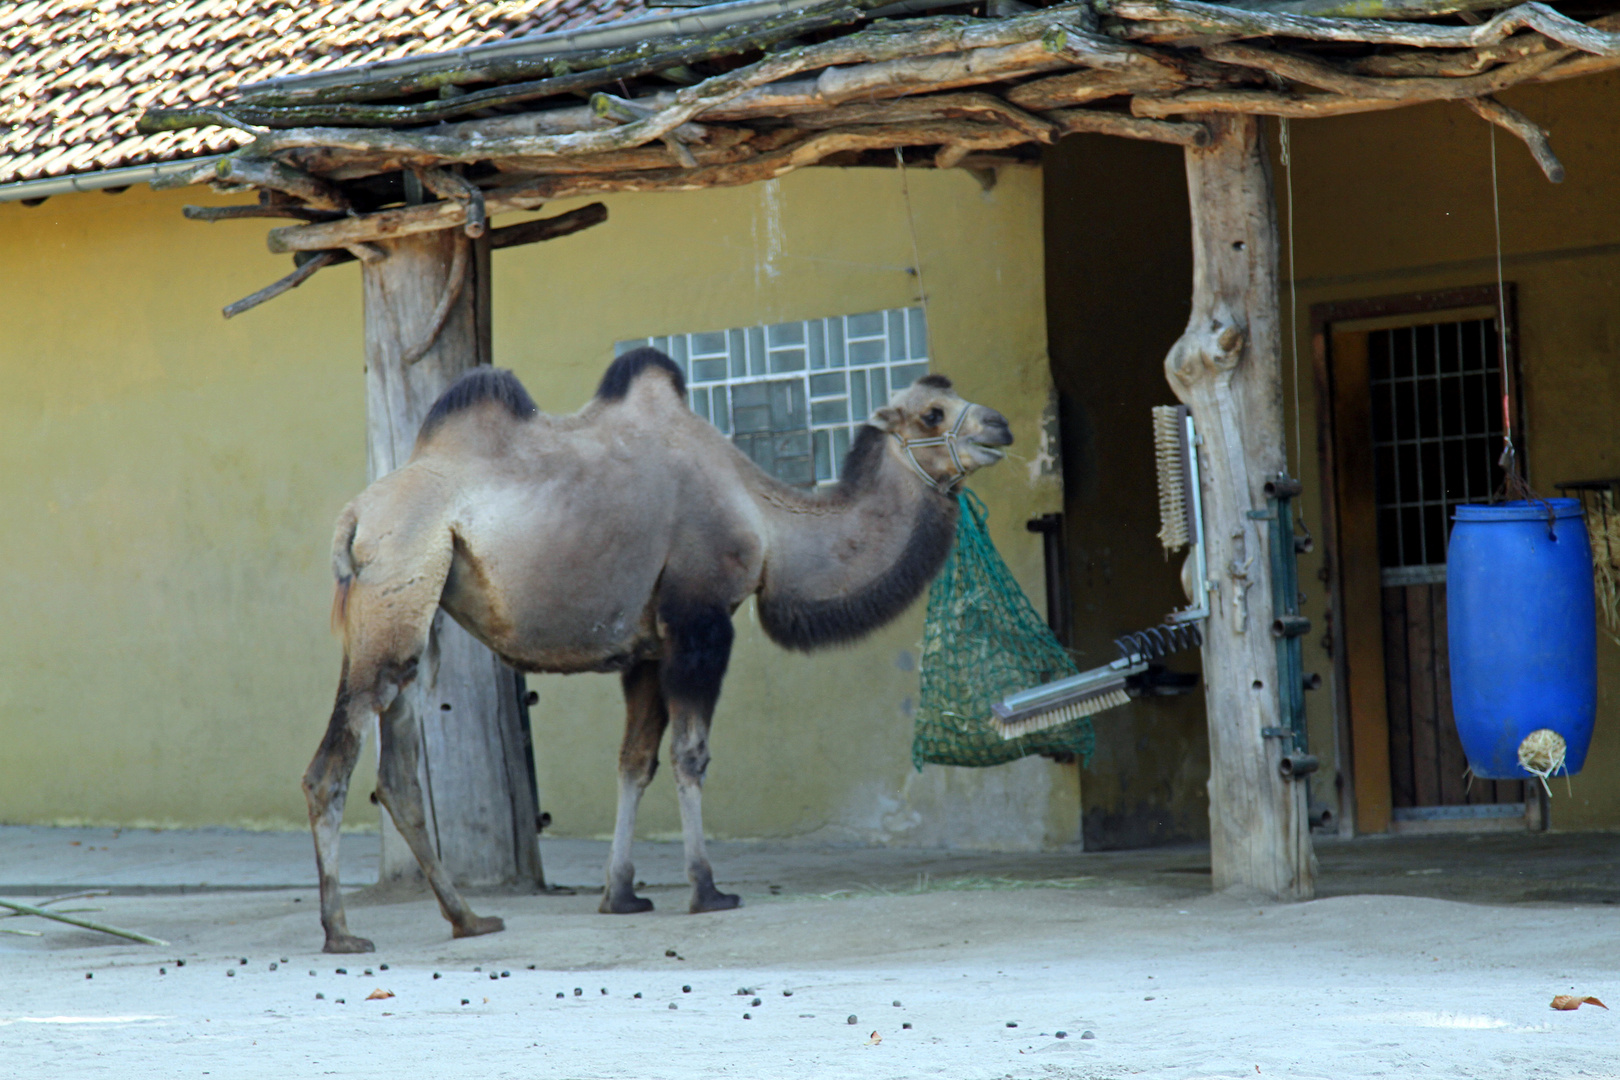 Kamel im Zoo Heidelberg 2